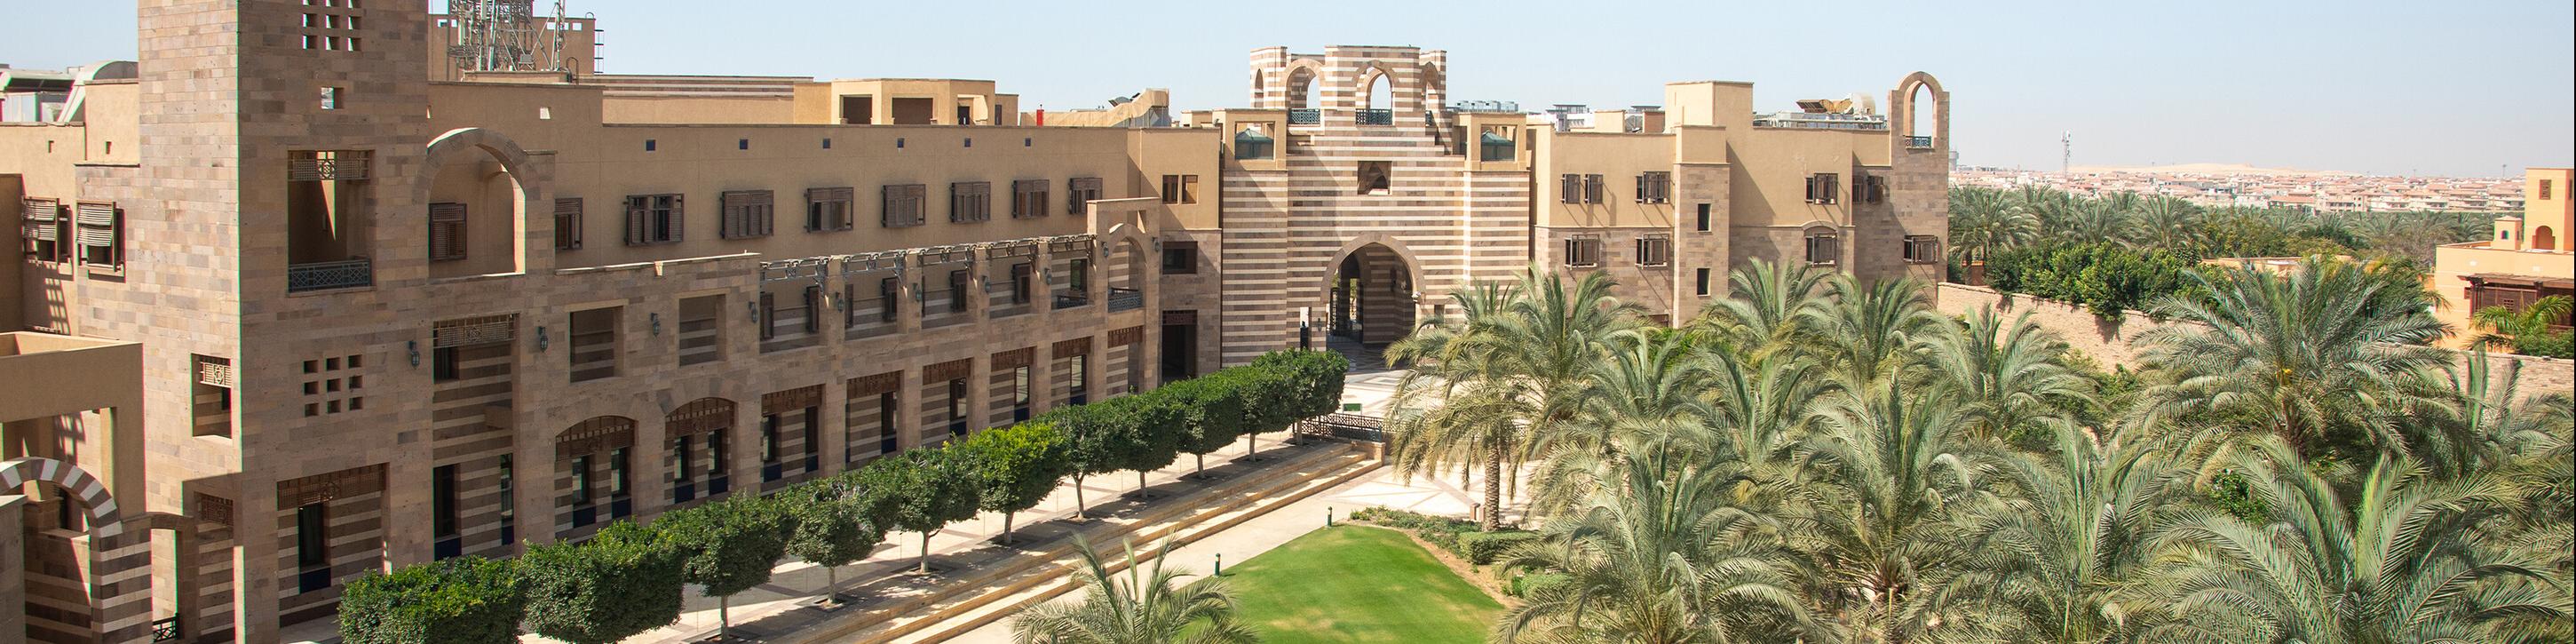 AUC New Cairo Campus